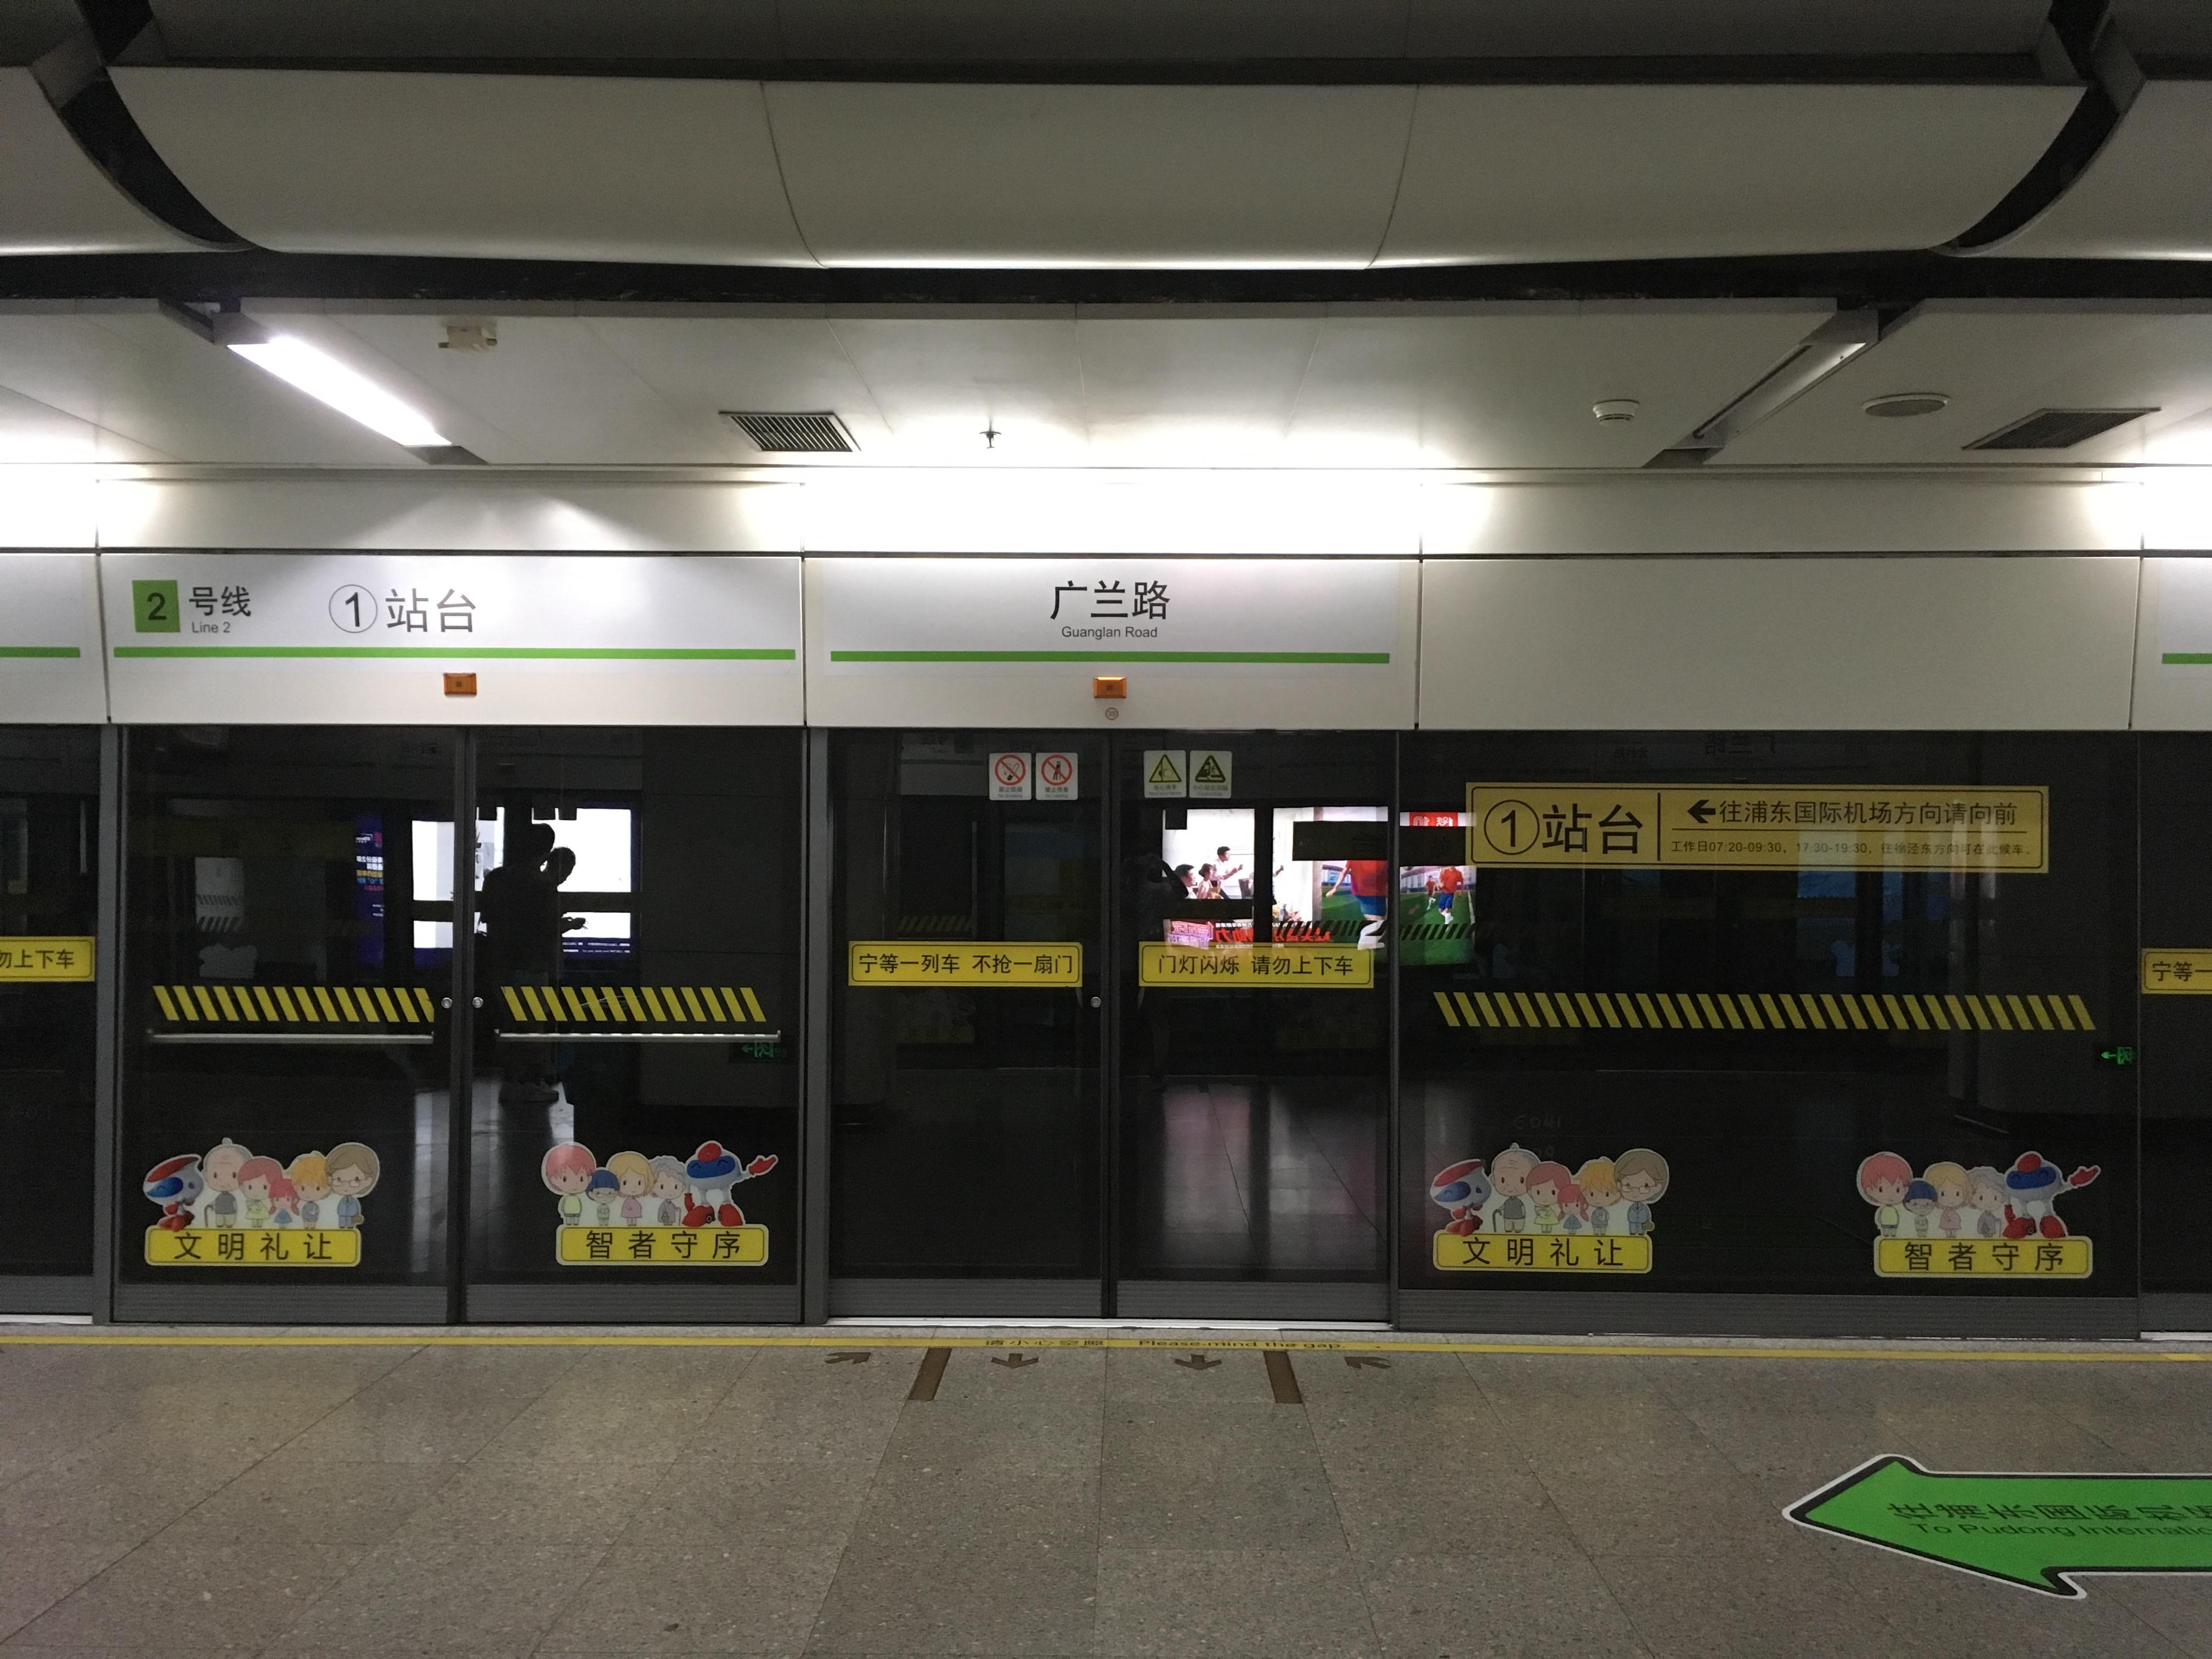 上海地铁站指示牌图片